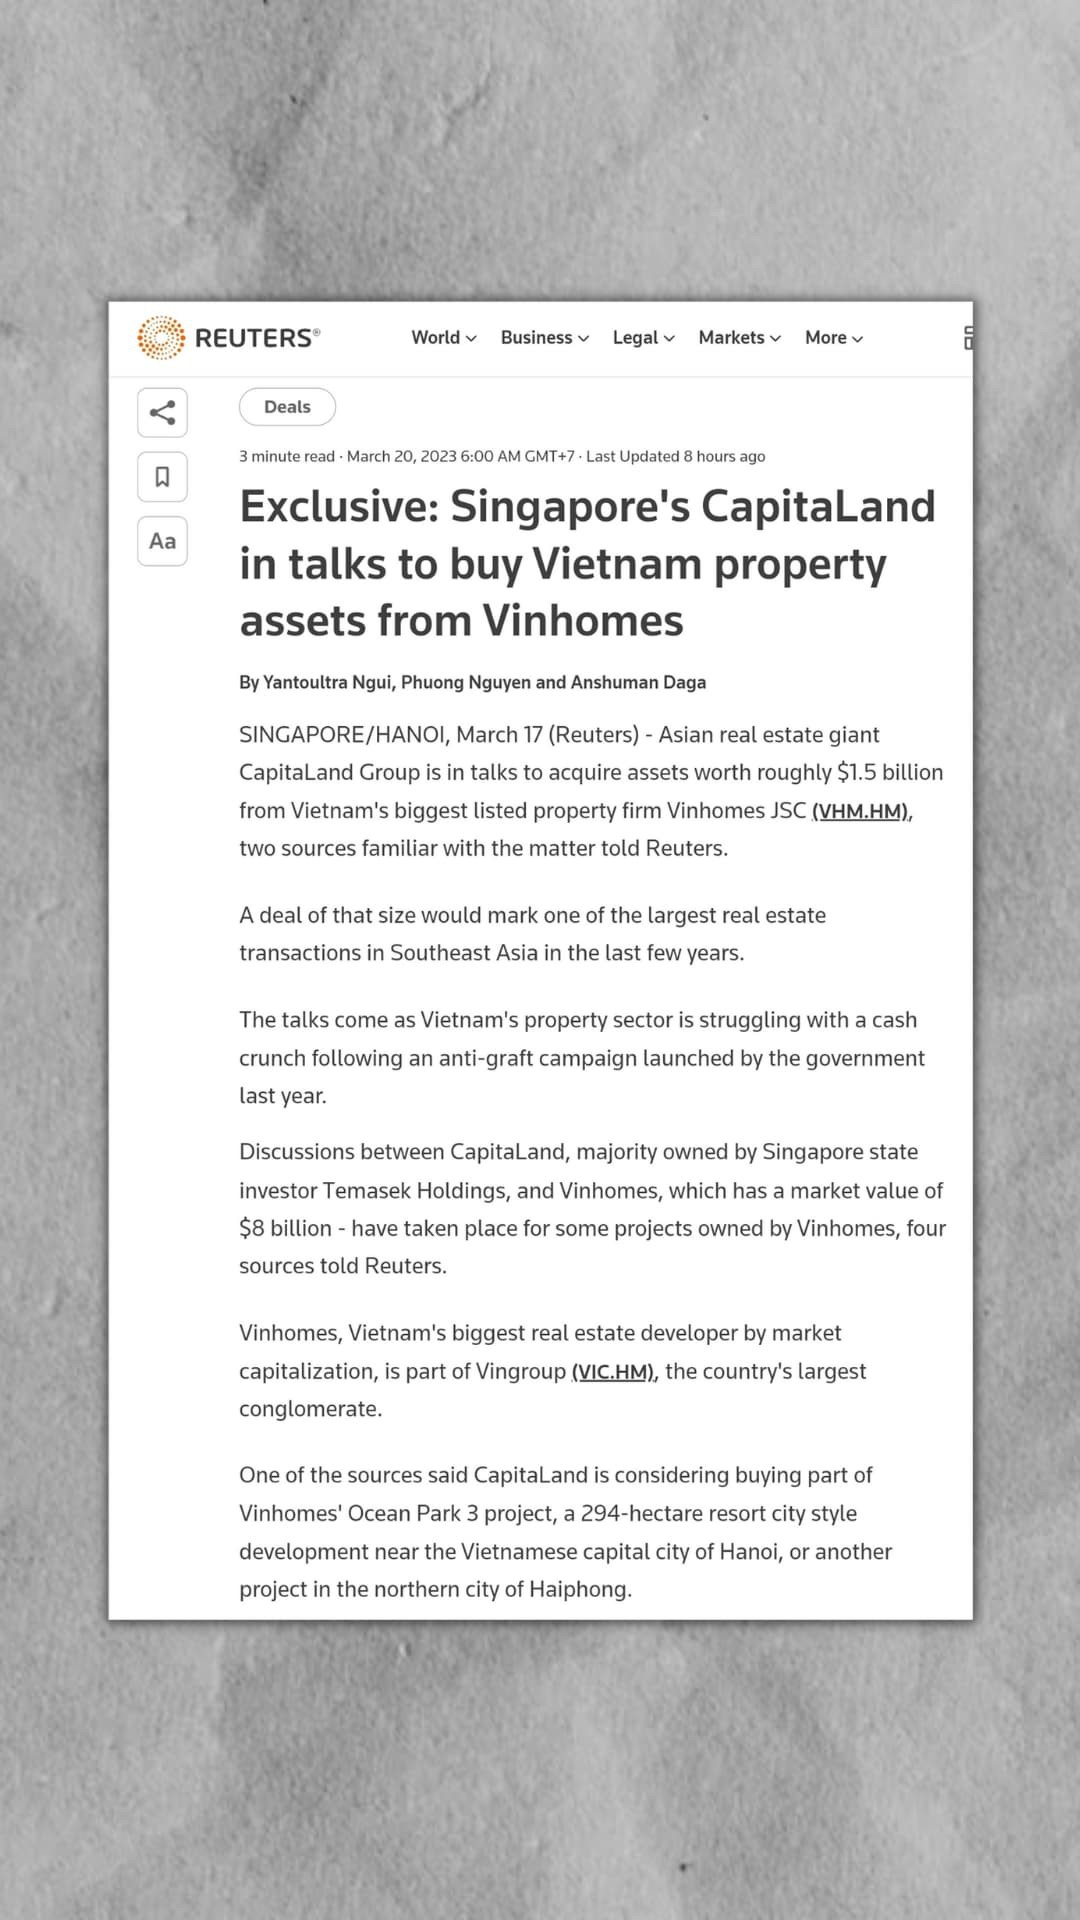 Thương vụ $1.5 tỷ của tập đoàn Vingroup với Capitaland sẽ ảnh hưởng thế nào đến giá cổ phiếu họ nhà  ...